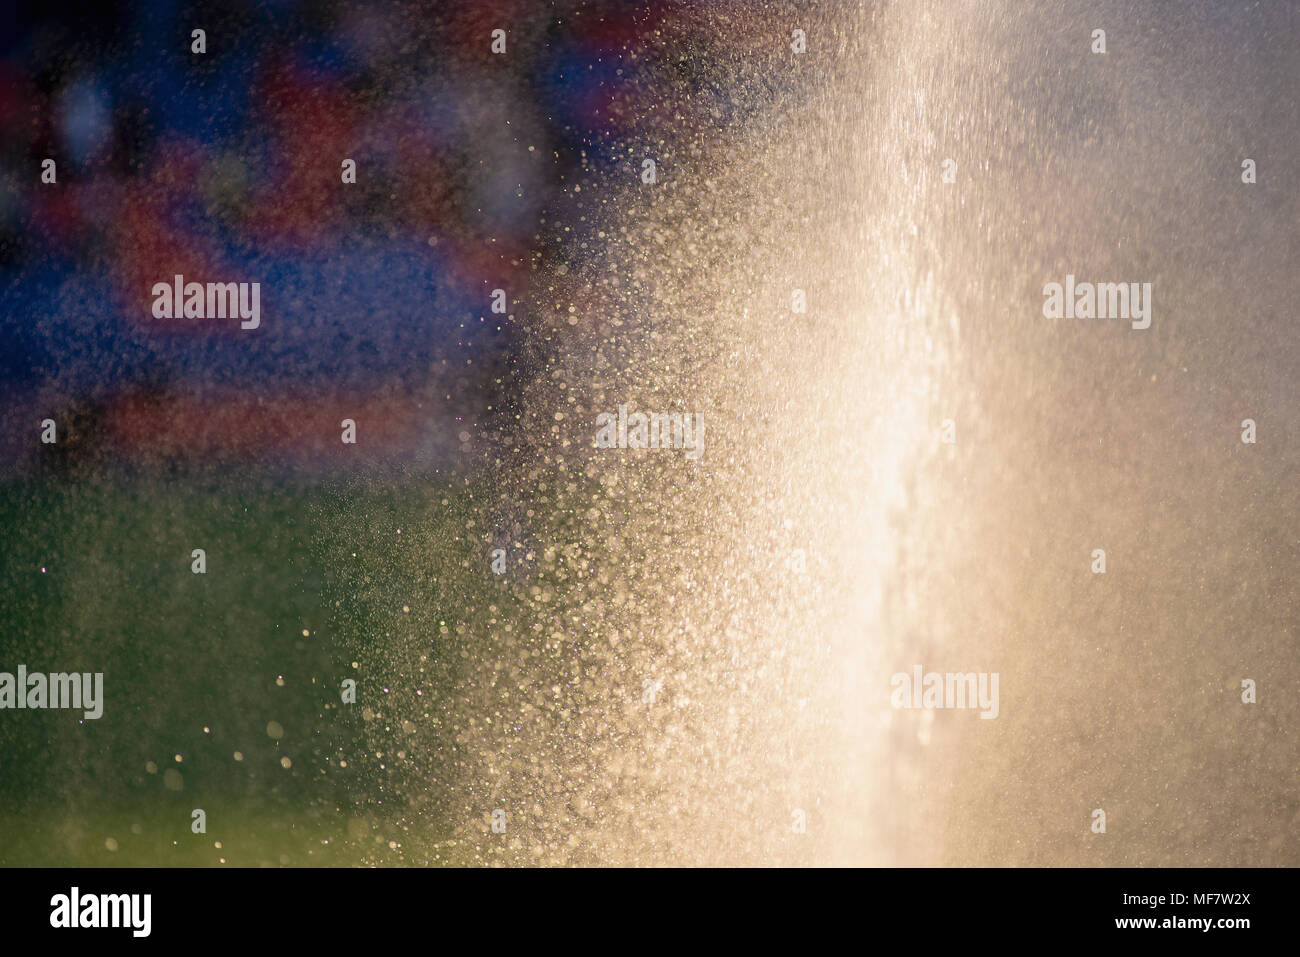 Tappeto erboso di irrigazione. Irrigazione sprinkler campo di calcio. Foto Stock